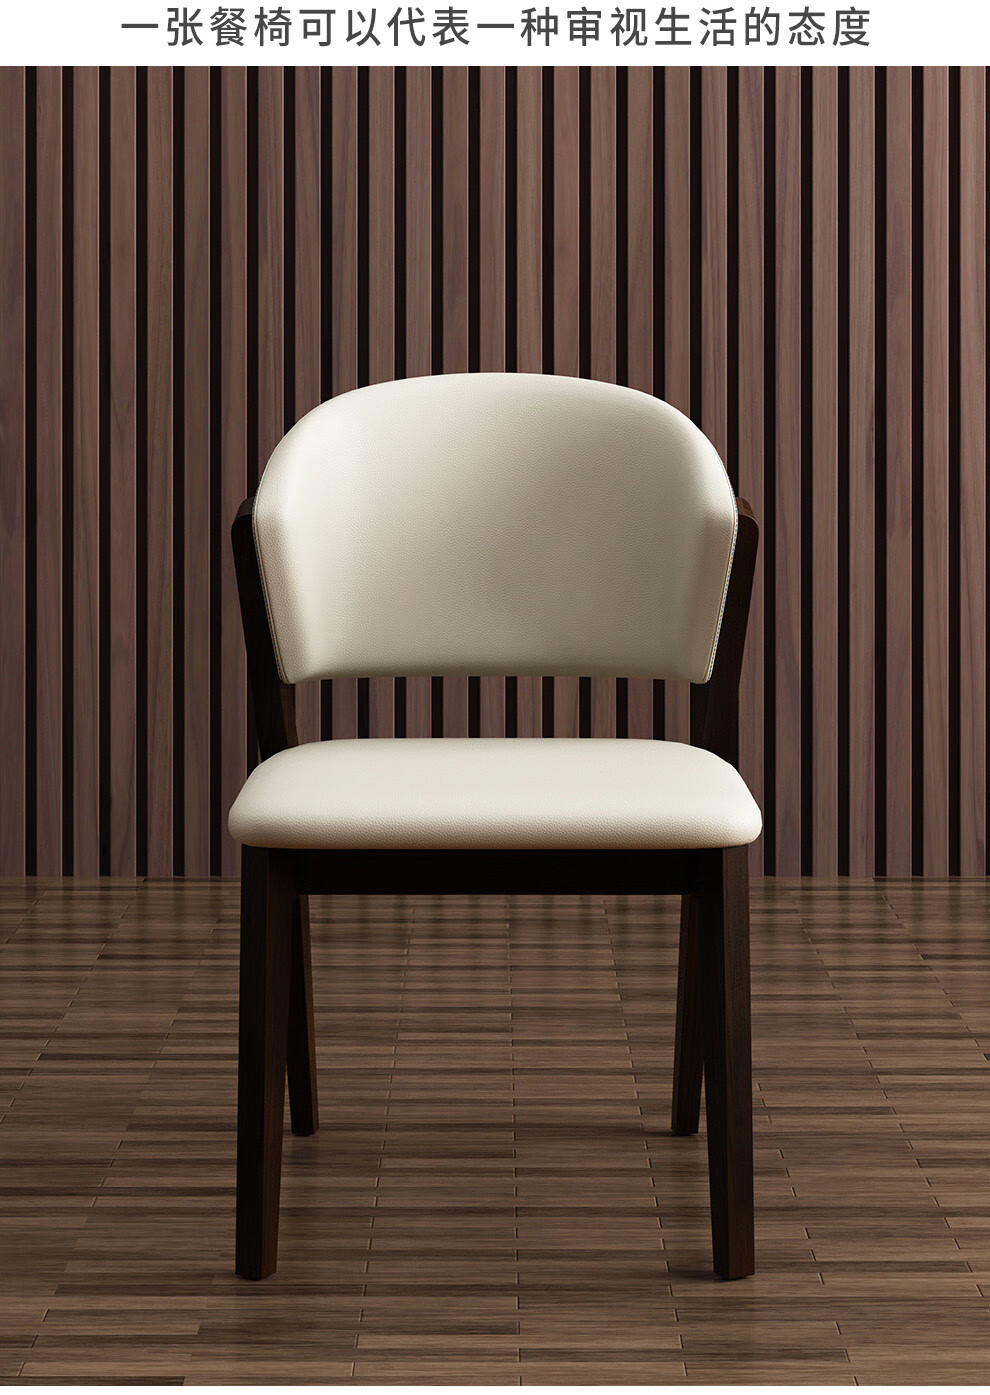 实木餐椅现代简约家用北美白蜡木椅子家用餐桌椅靠背椅b524